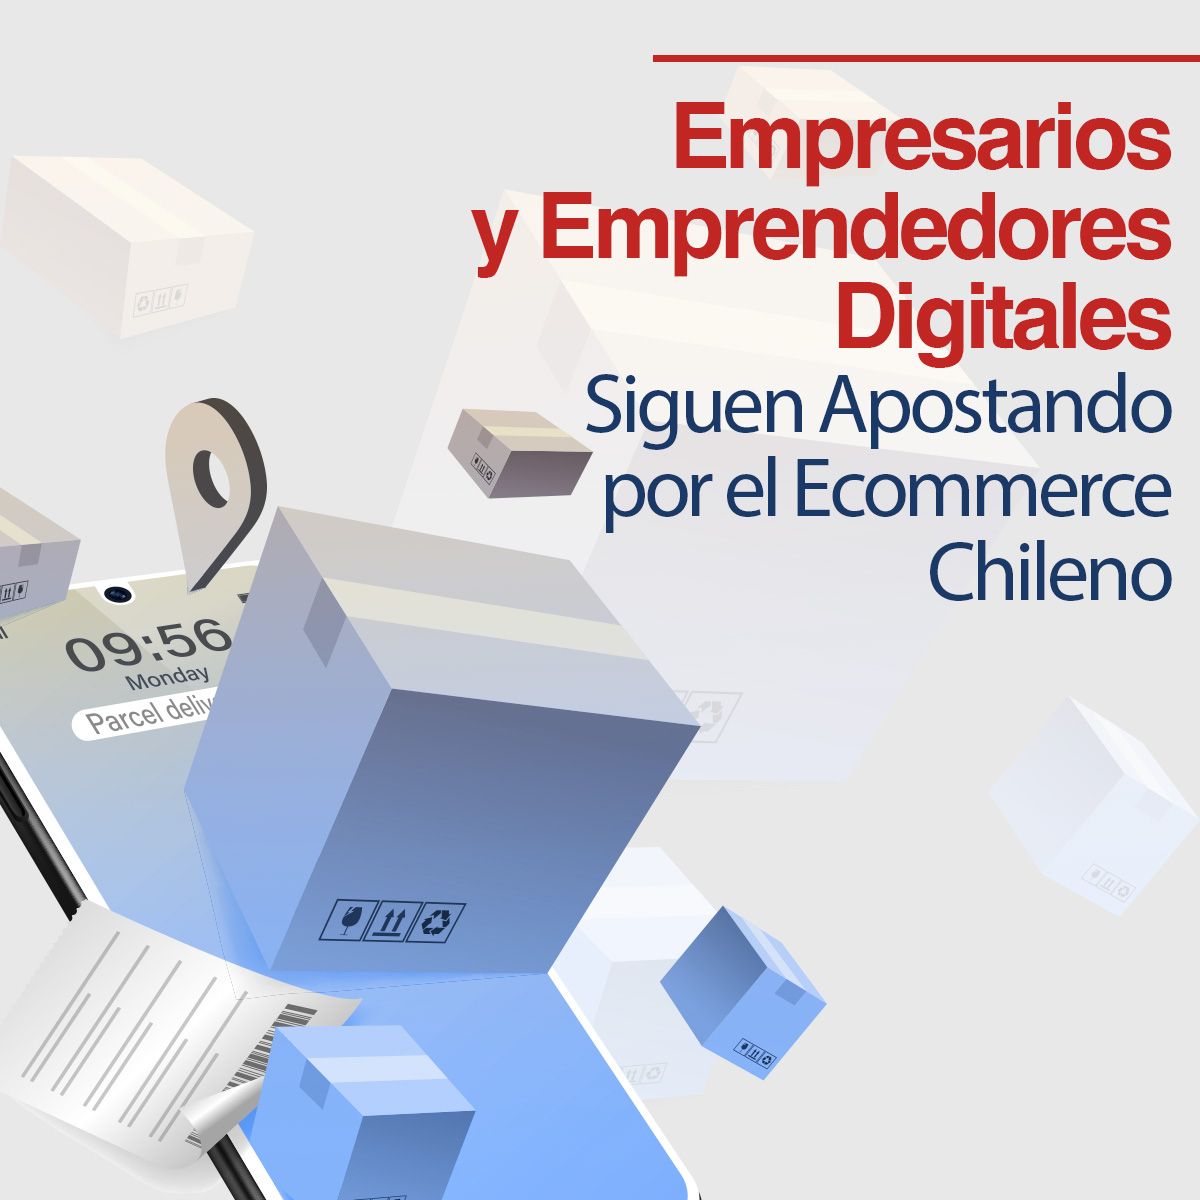 Empresarios y Emprendedores Digitales Siguen Apostando por el Ecommerce Chileno